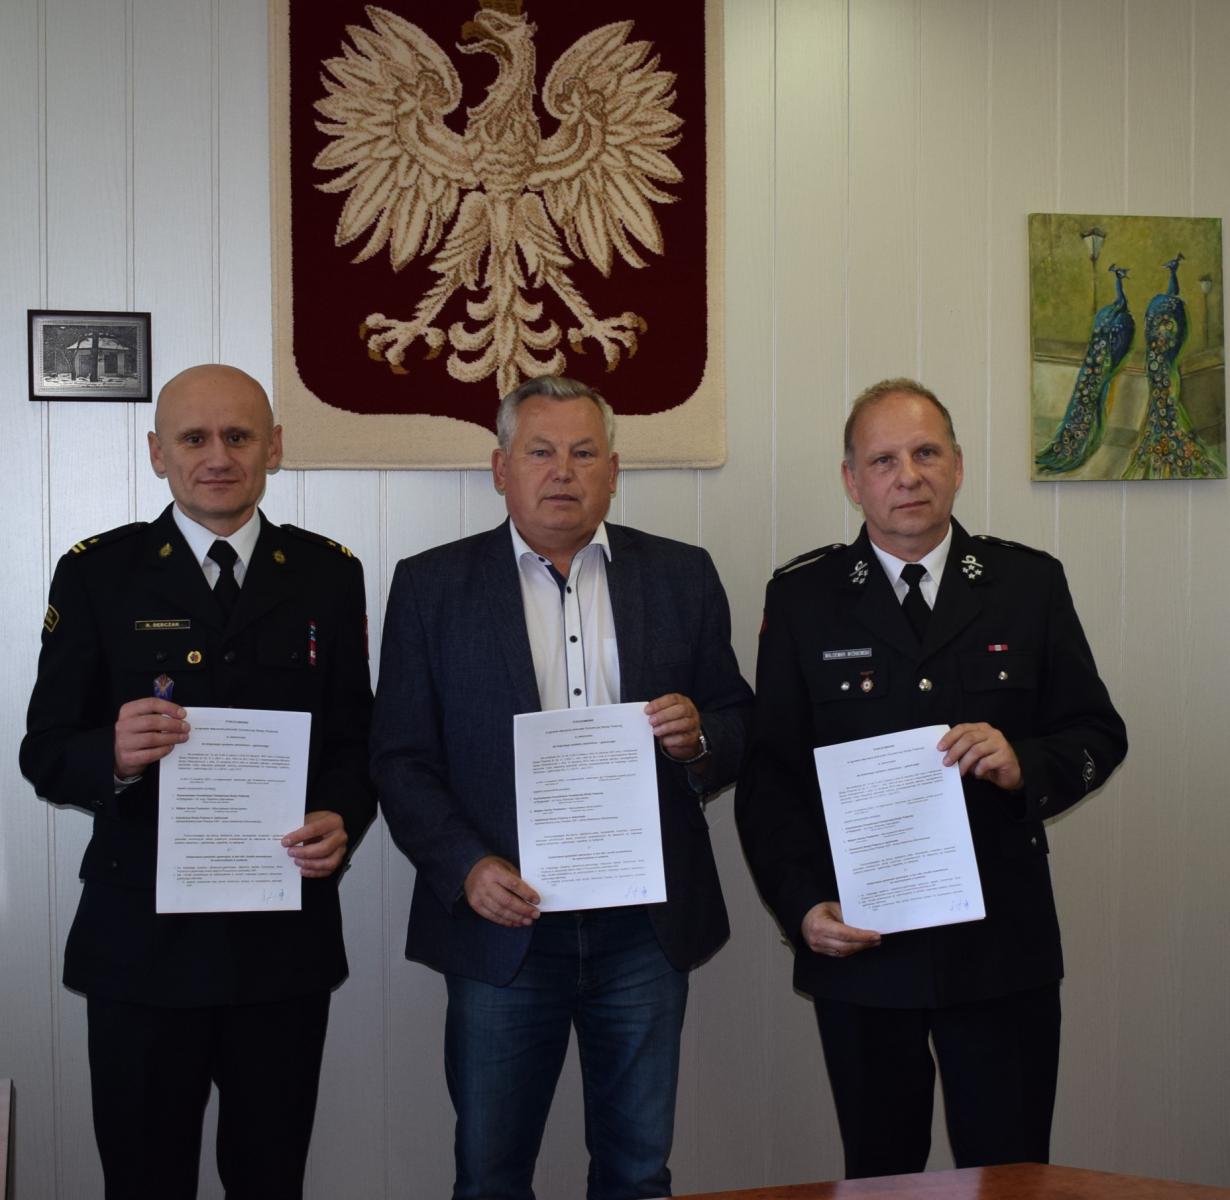 Podpisano porozumienie w sprawie włączenia jednostki OSP Jesionowo do Krajowego Systemu Ratowniczo - Gaśniczego